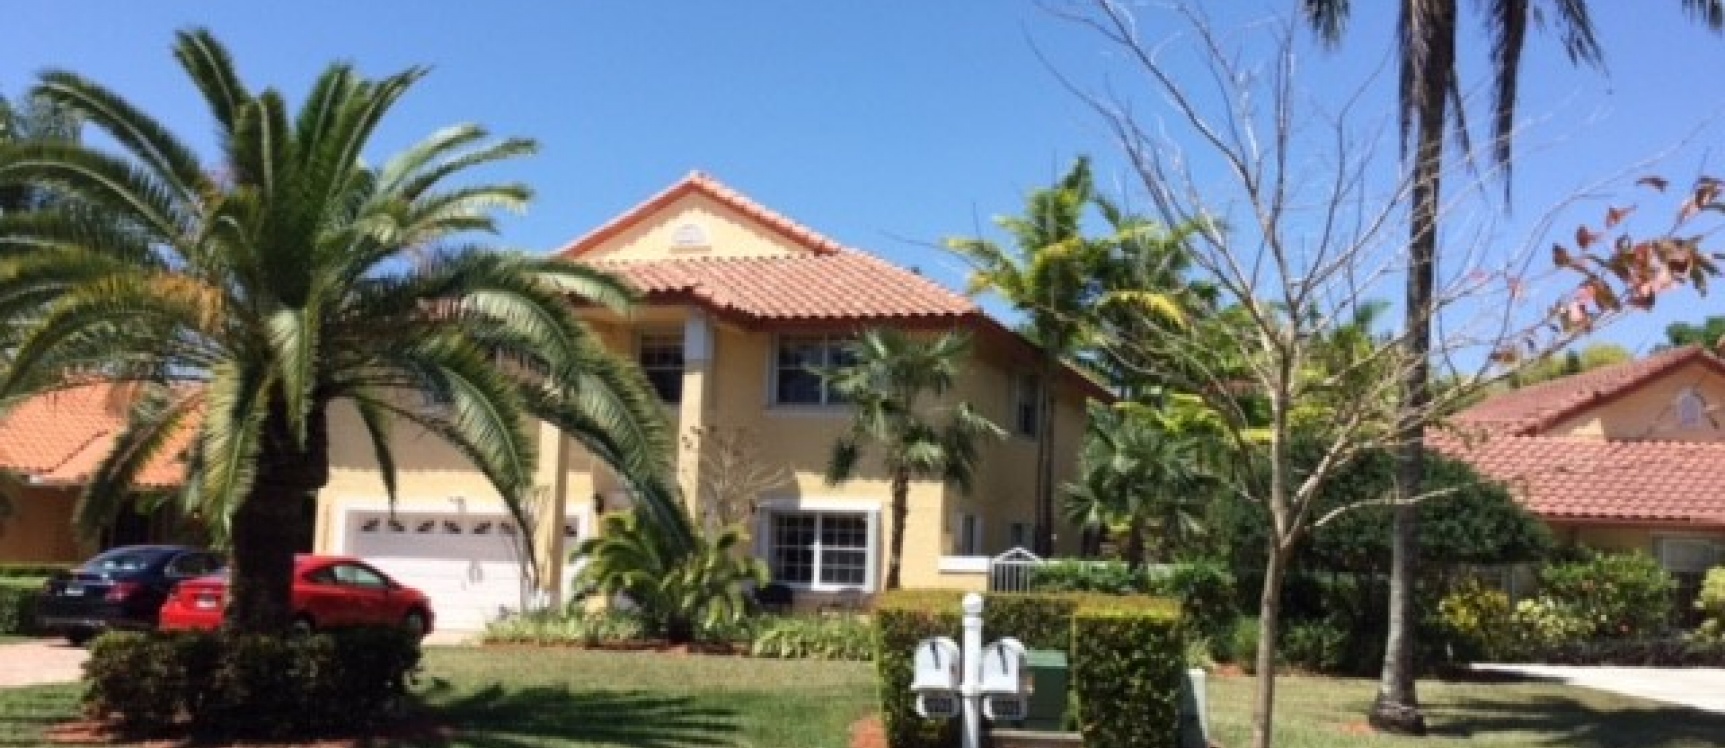 GeoBienes - Casa en DORAL DUNES, MIAMI - Plusvalia Guayaquil Casas de venta y alquiler Inmobiliaria Ecuador